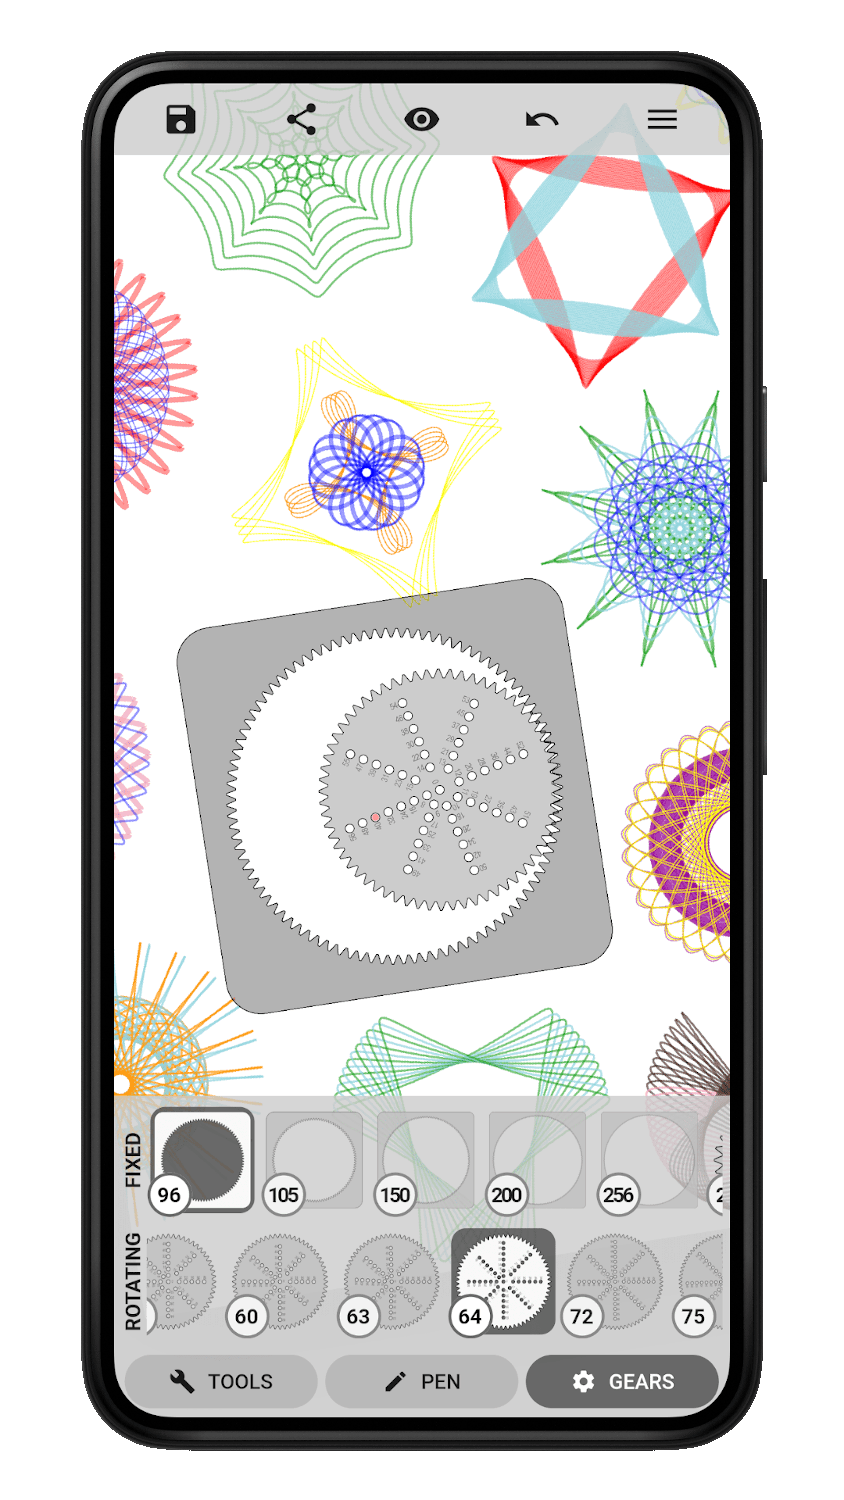 A screenshot of the Inspiral app